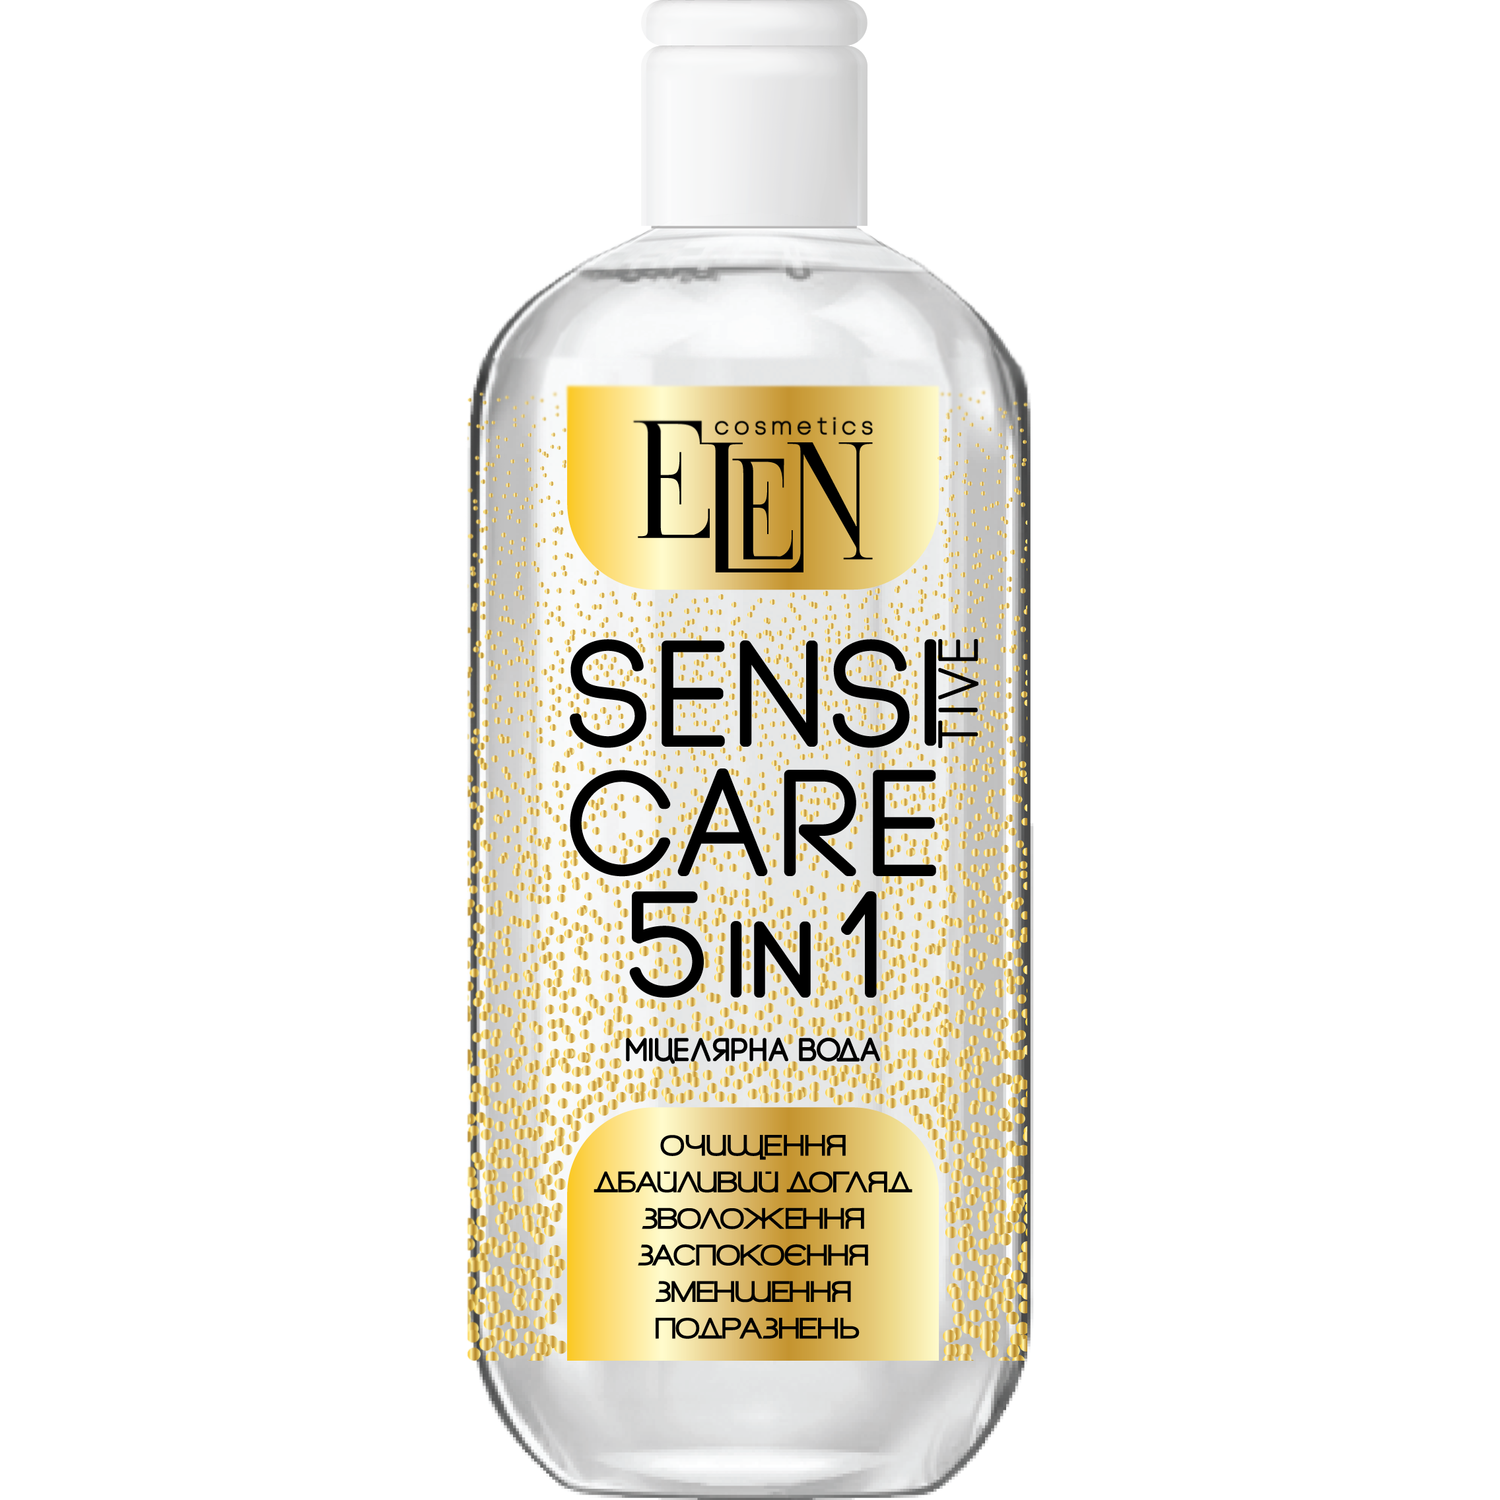 Міцелярна вода Elen Cosmetics Sensitive Care 5в1, 500 мл - фото 1